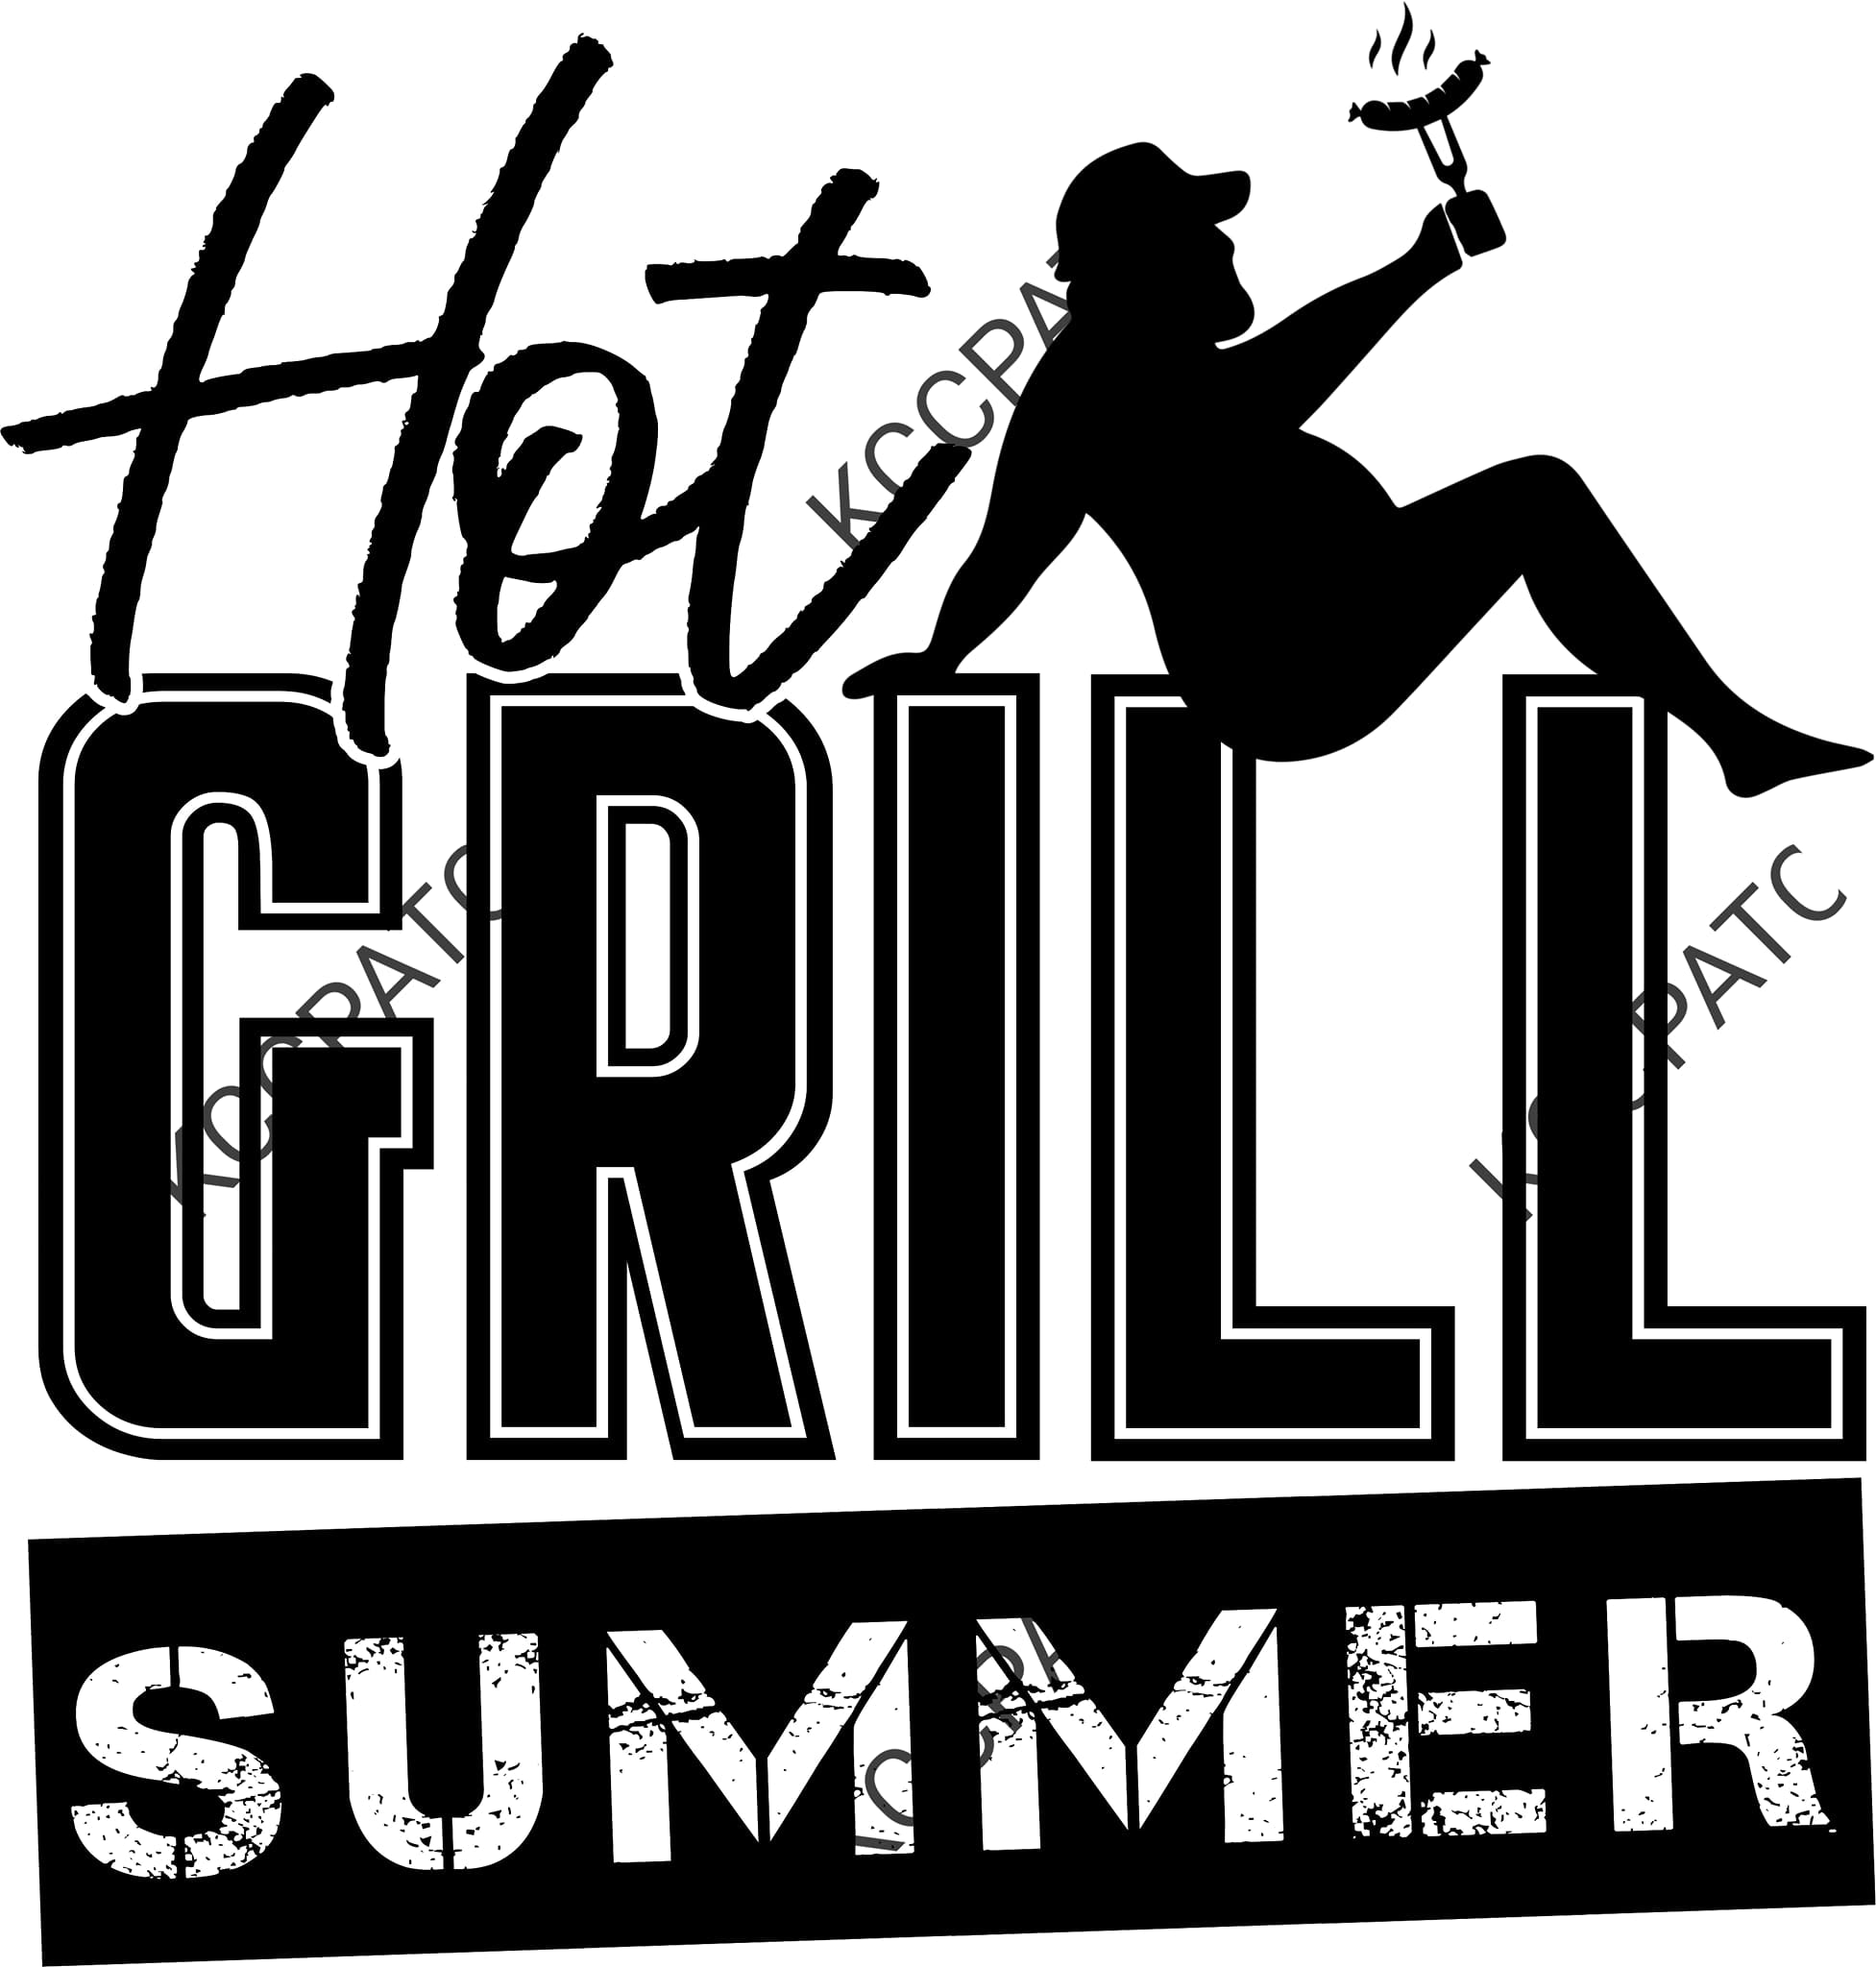 Hot Grill Summer